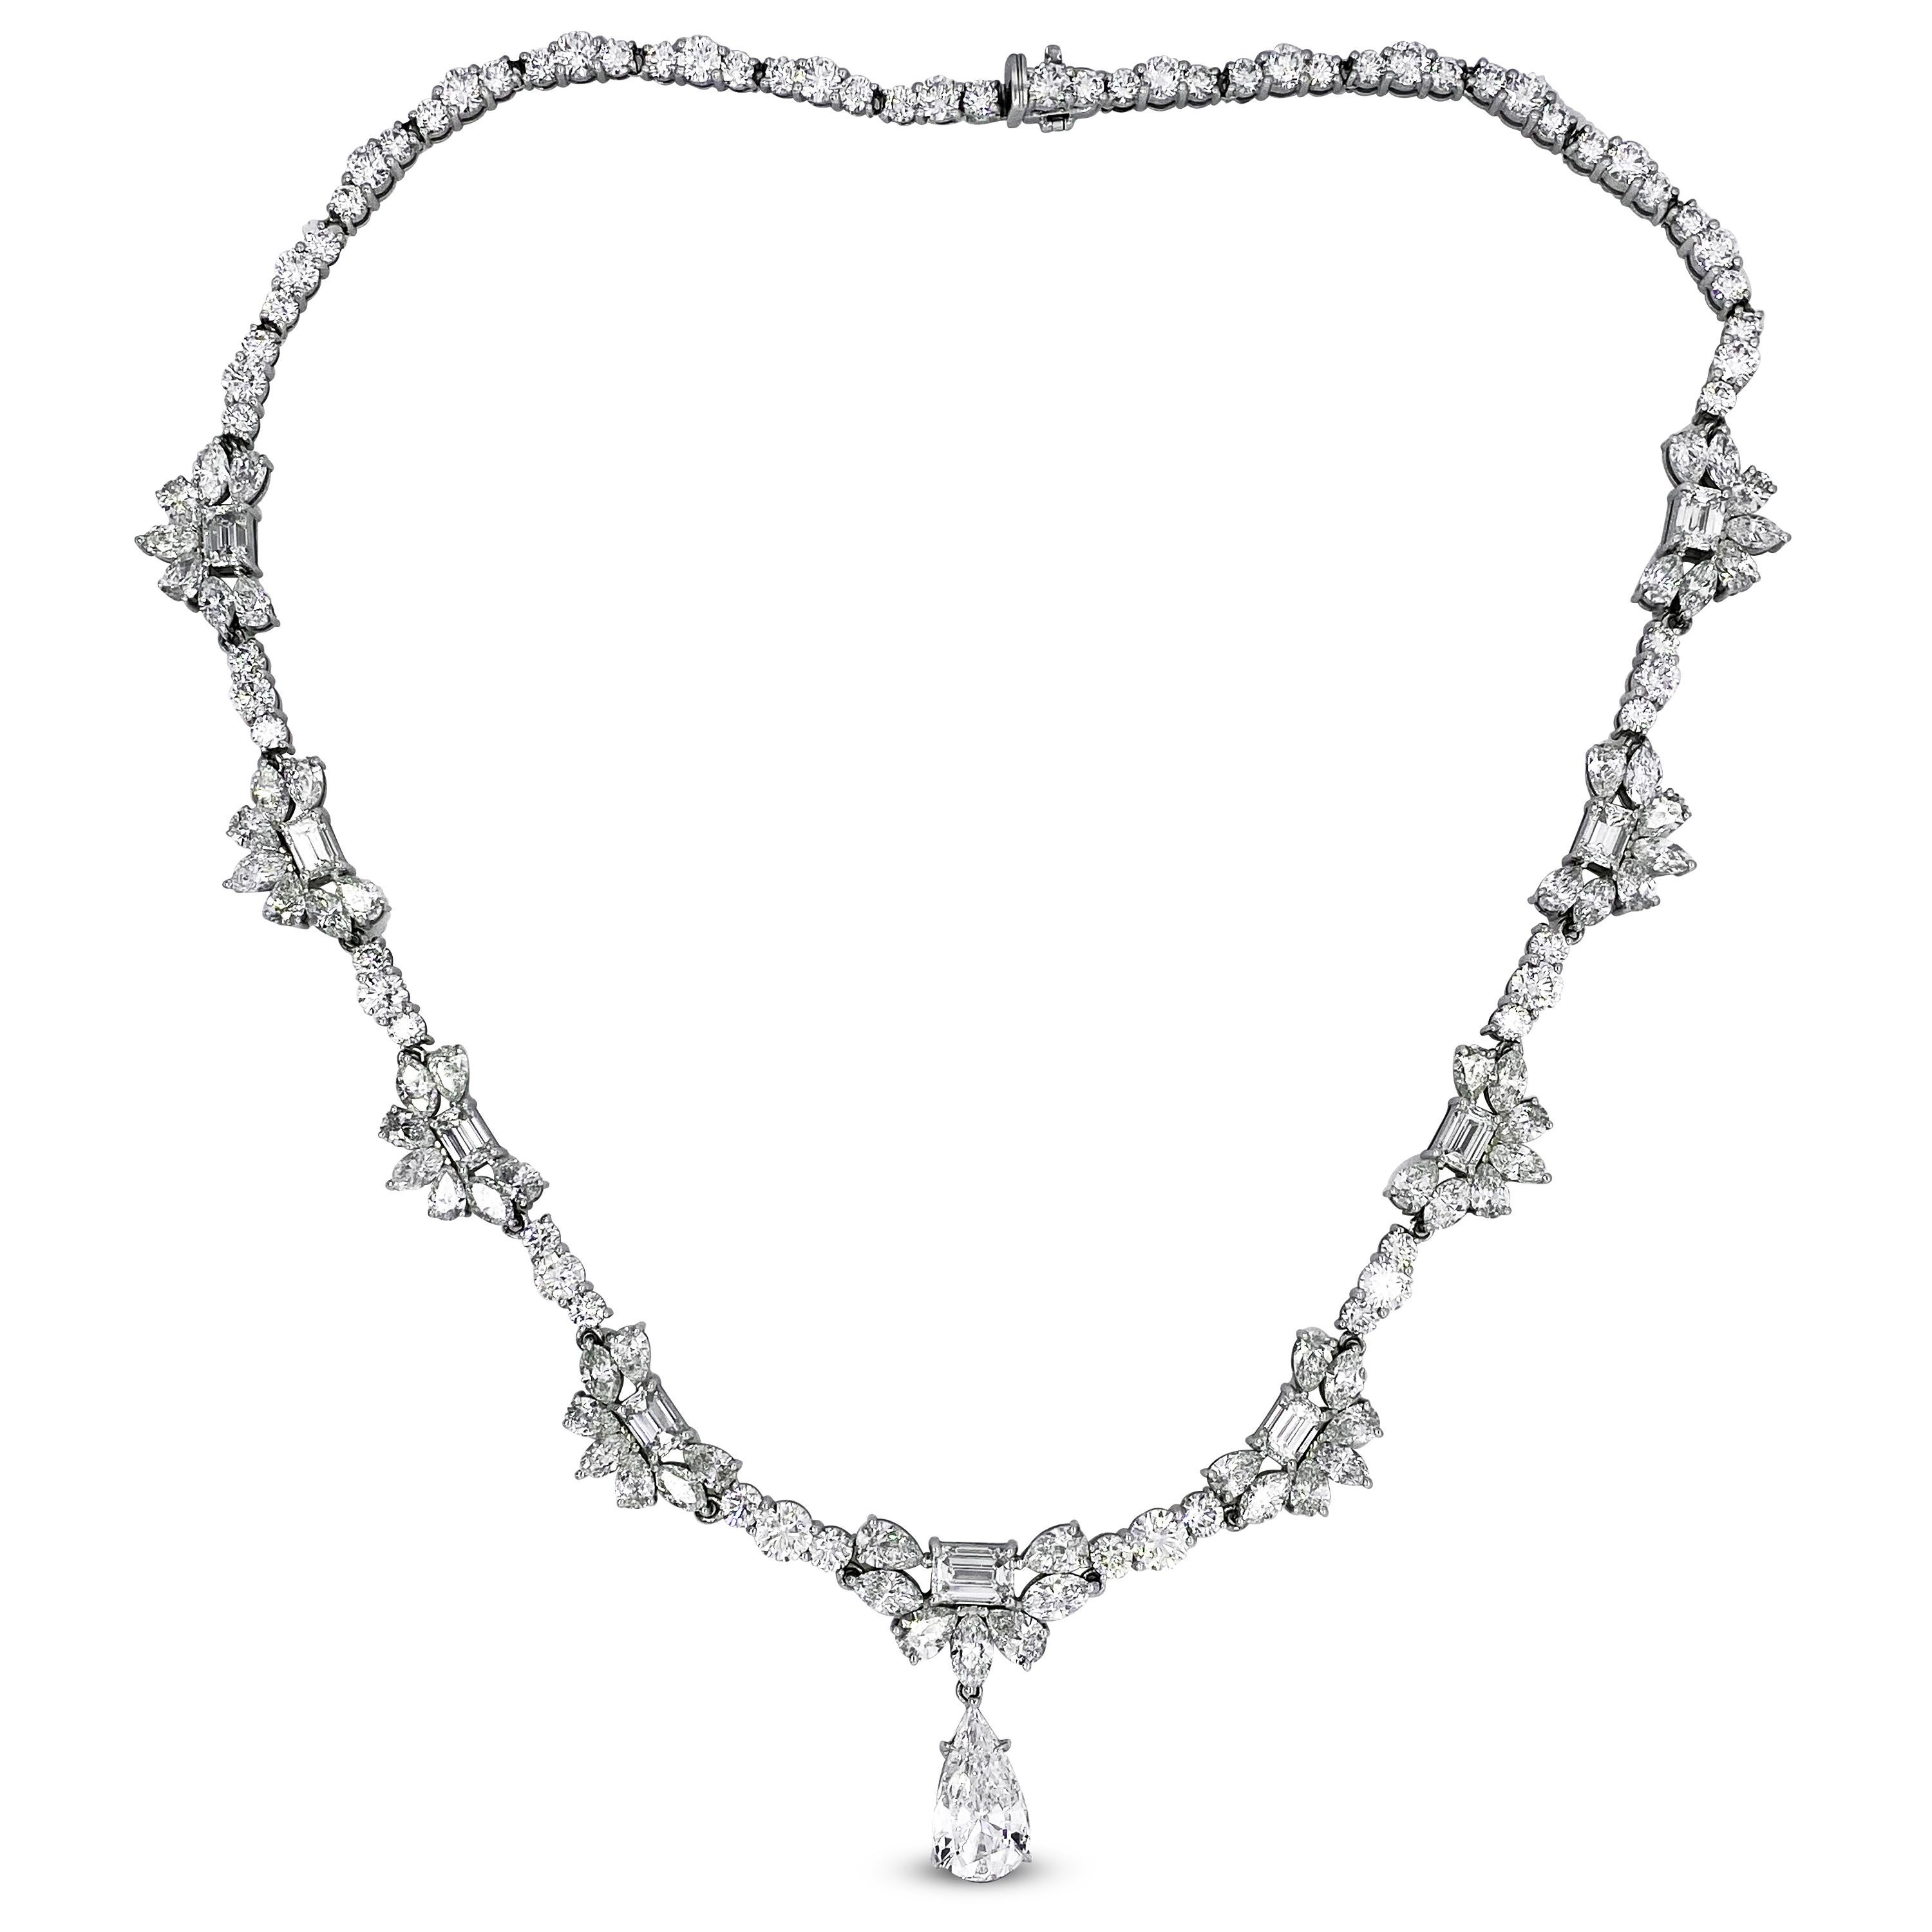 Collier en platine avec diamants multiformes de taille émeraude, ronde, marquise et poire

Ce collier unique en son genre est exceptionnel avec ses 29,50 carats de diamants de couleur E-F et de pureté VVS1-VS1

Le diamant en forme de poire est